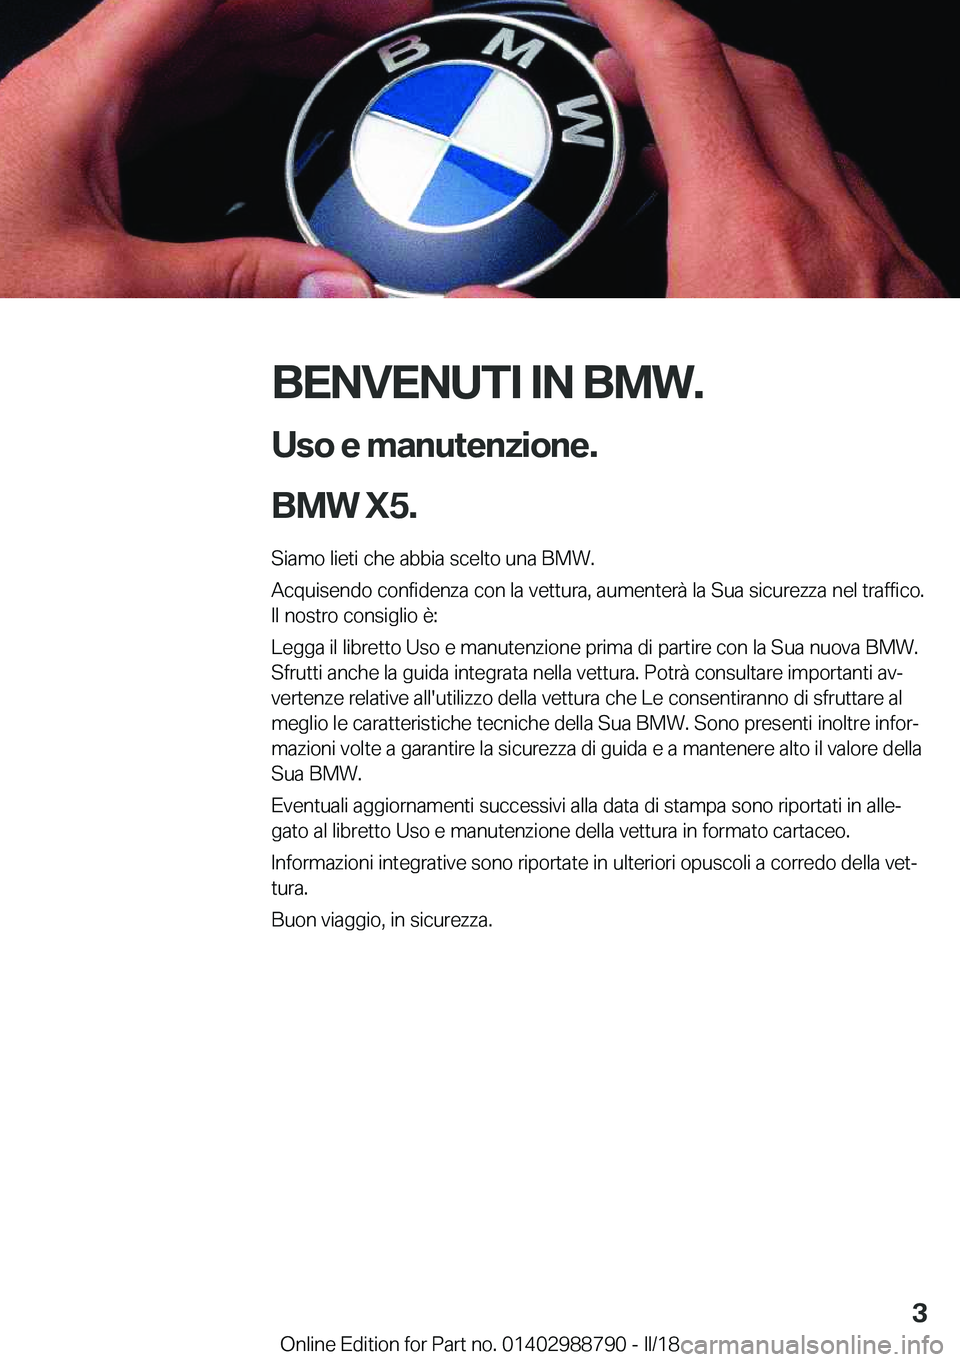 BMW X5 2018  Libretti Di Uso E manutenzione (in Italian) �B�E�N�V�E�N�U�T�I��I�N��B�M�W�.�U�s�o��e��m�a�n�u�t�e�n�z�i�o�n�e�.
�B�M�W��X�5�.
�S�i�a�m�o� �l�i�e�t�i� �c�h�e� �a�b�b�i�a� �s�c�e�l�t�o� �u�n�a� �B�M�W�.
�A�c�q�u�i�s�e�n�d�o� �c�o�n�f�i�d�e�